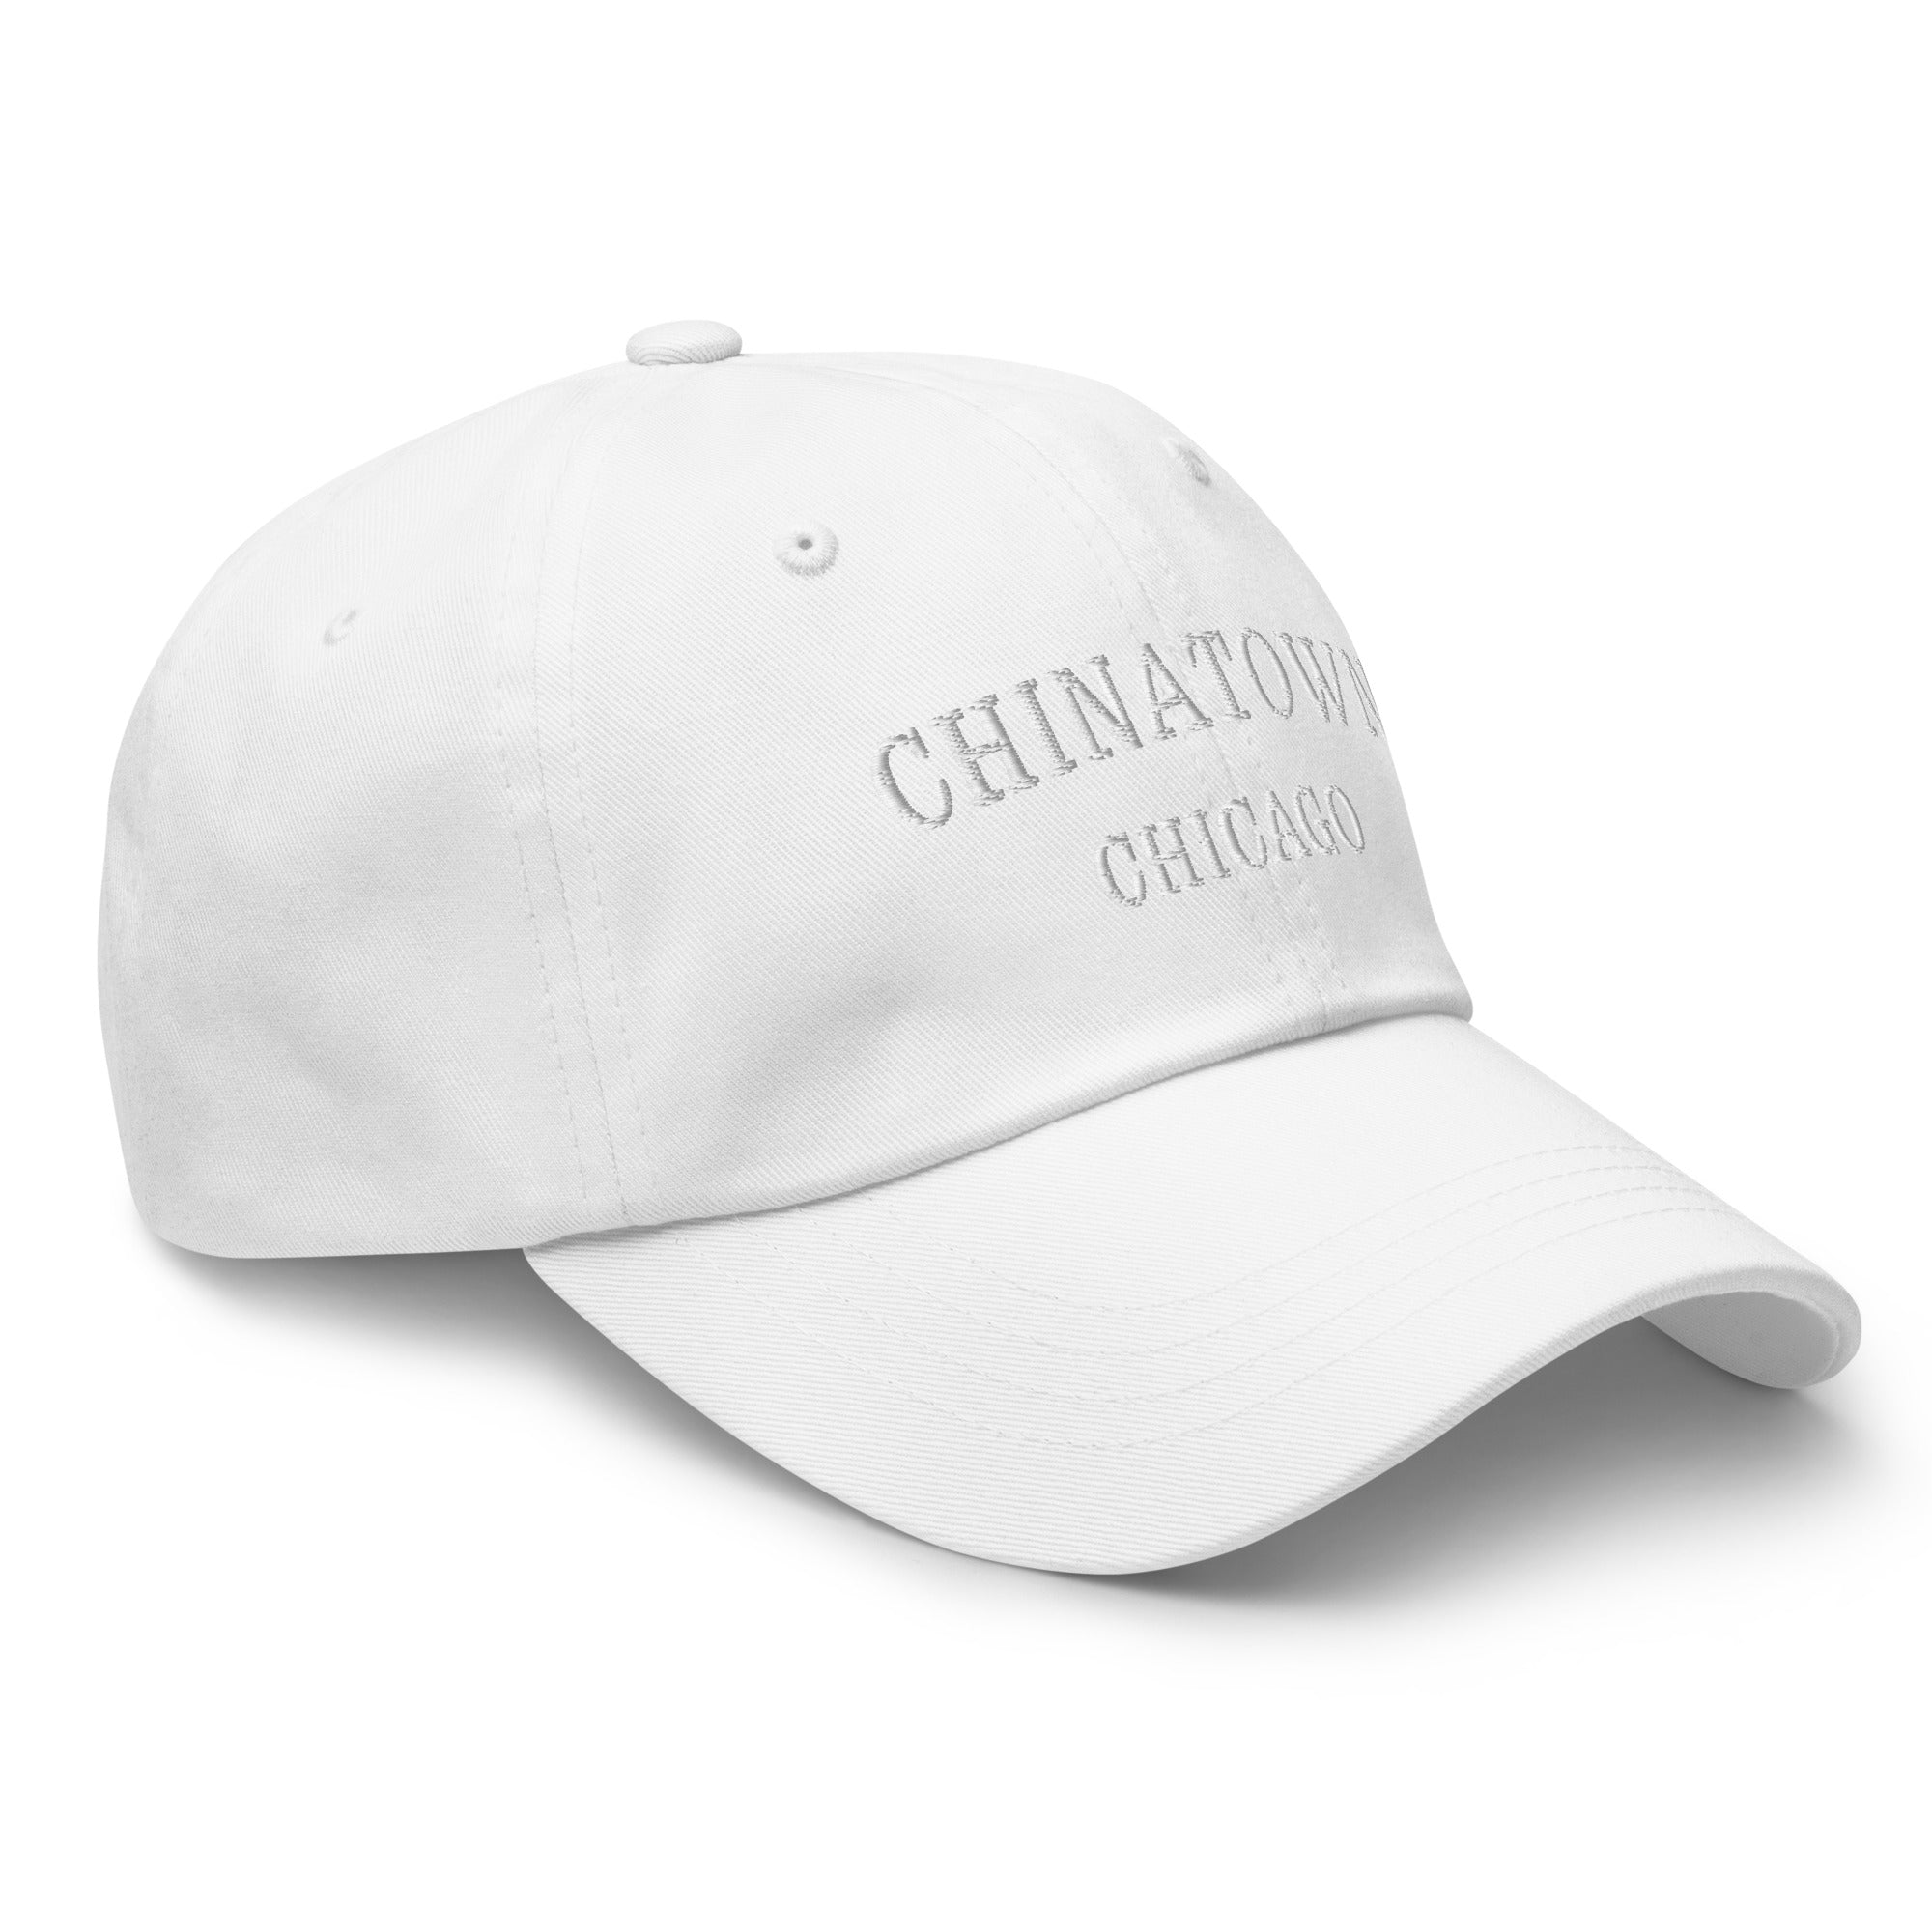 Chinatown Chicago Dad Hat - White Stitching